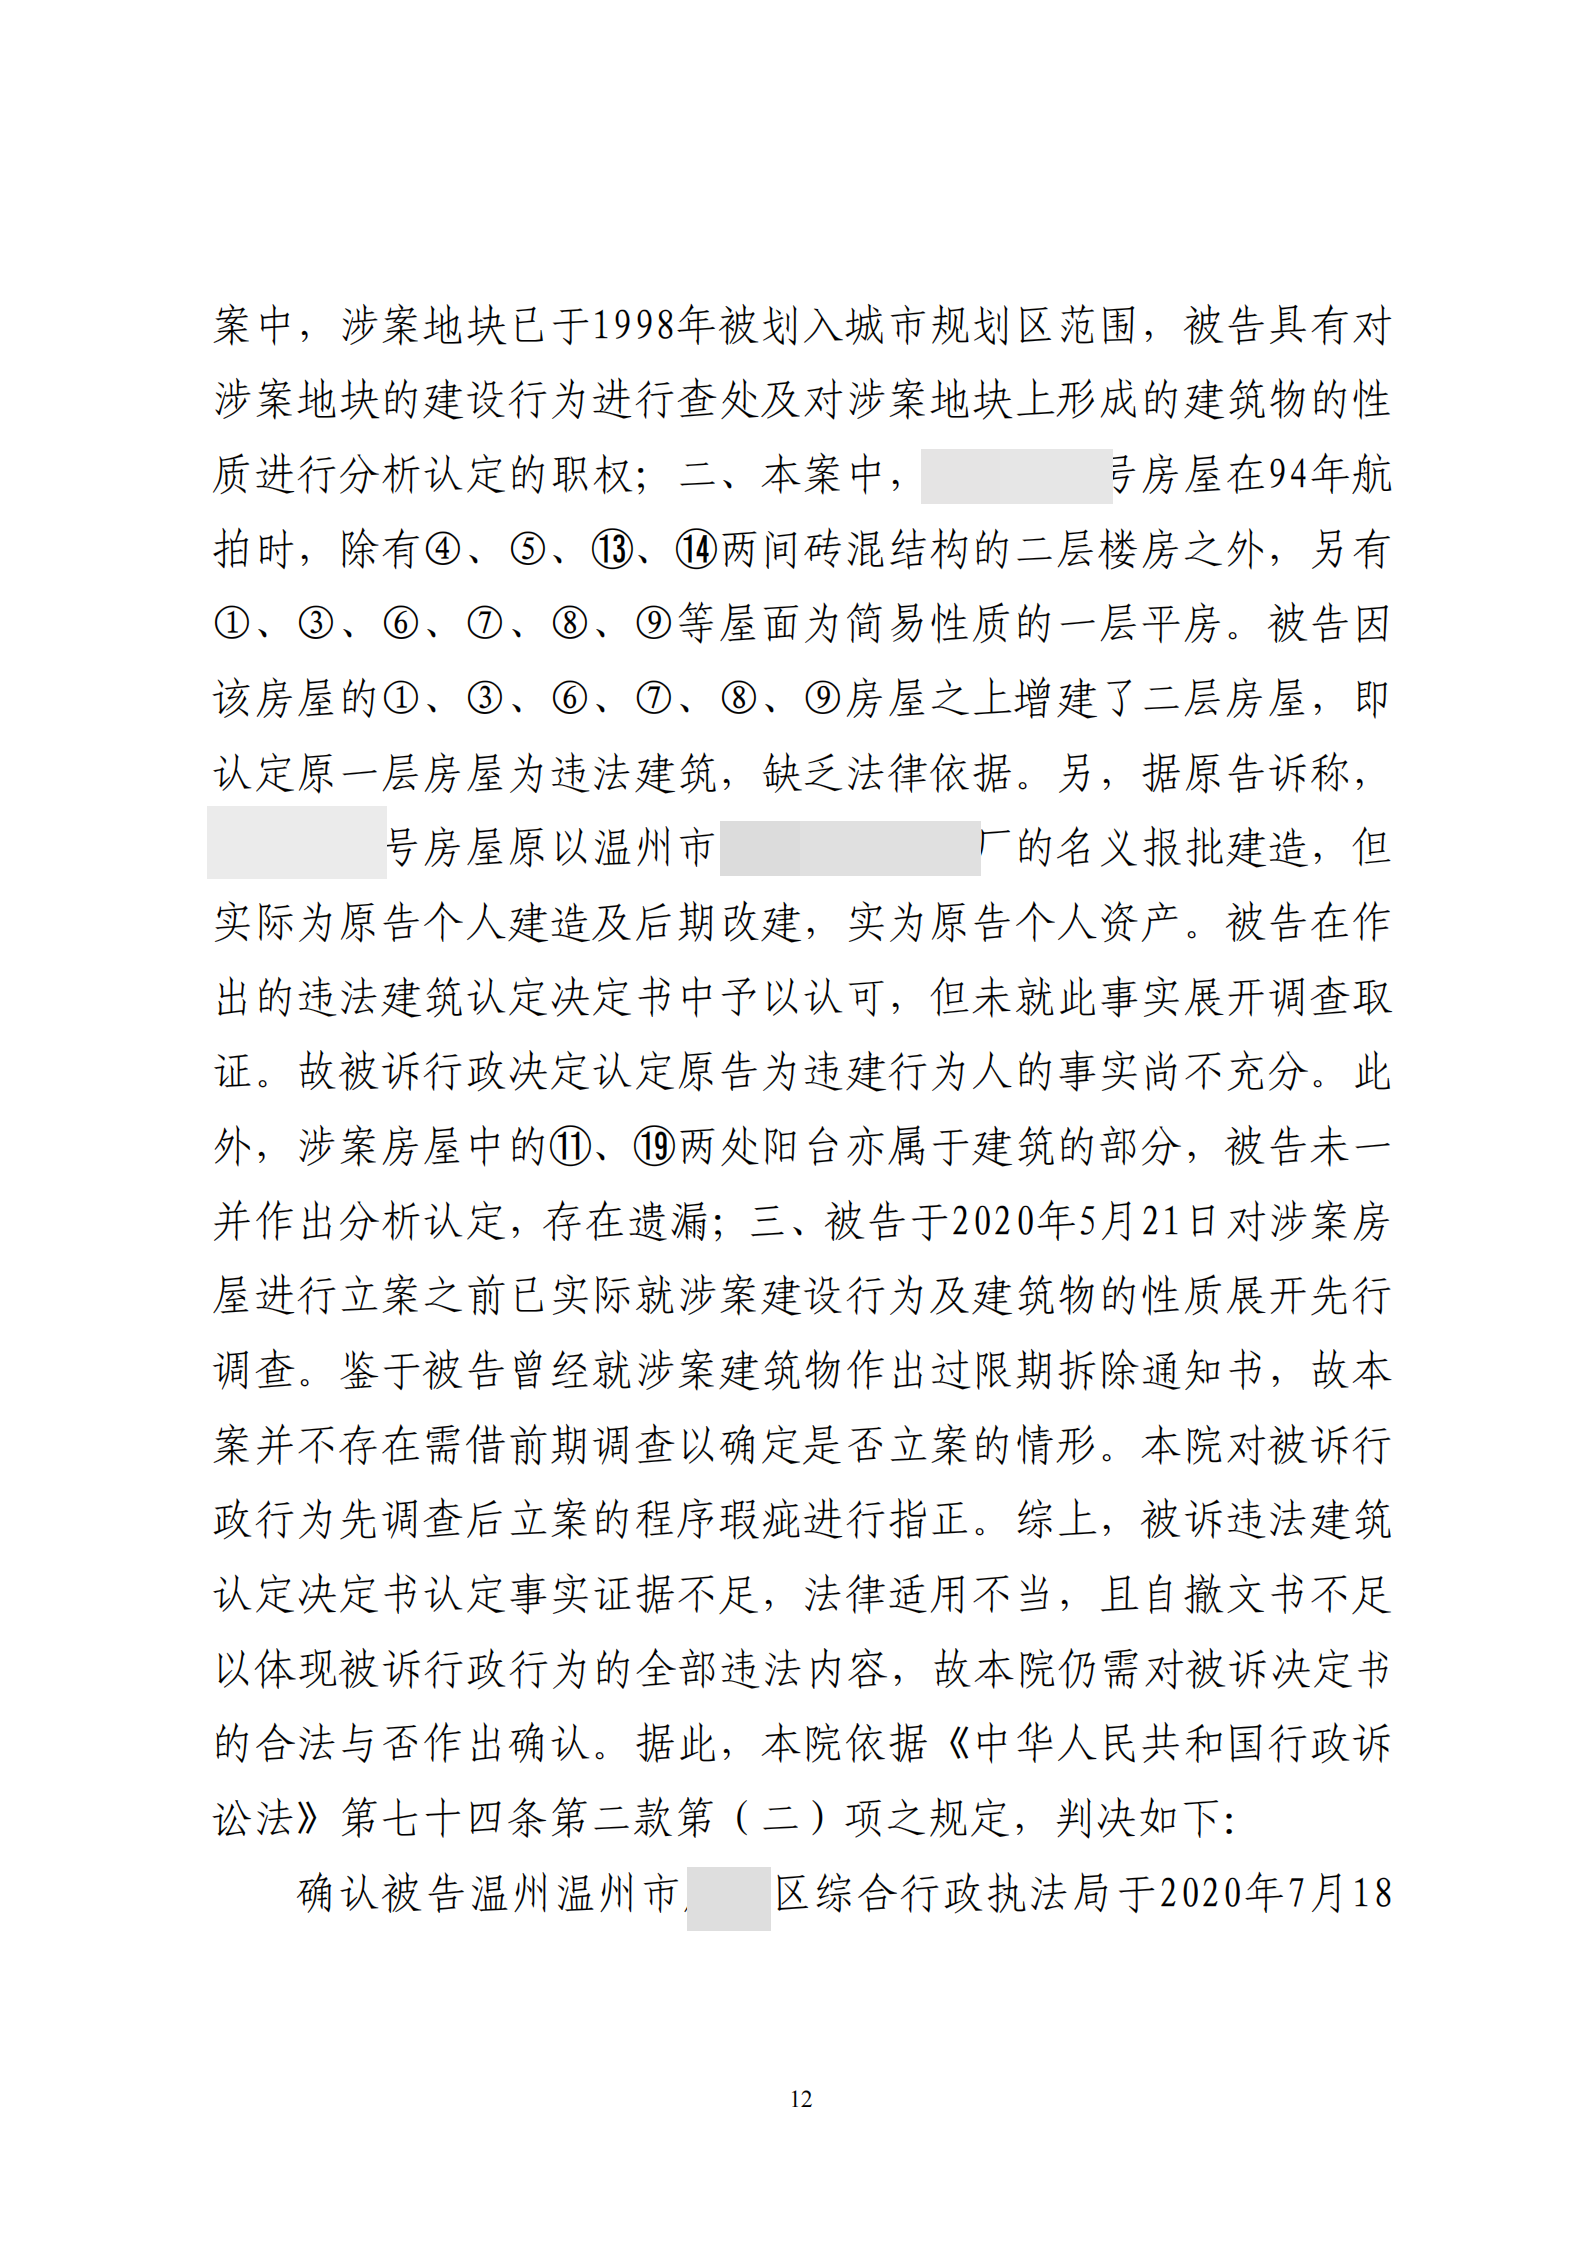  浙江温州:被连续两次撤销的违法建筑决定，还要再来吗？